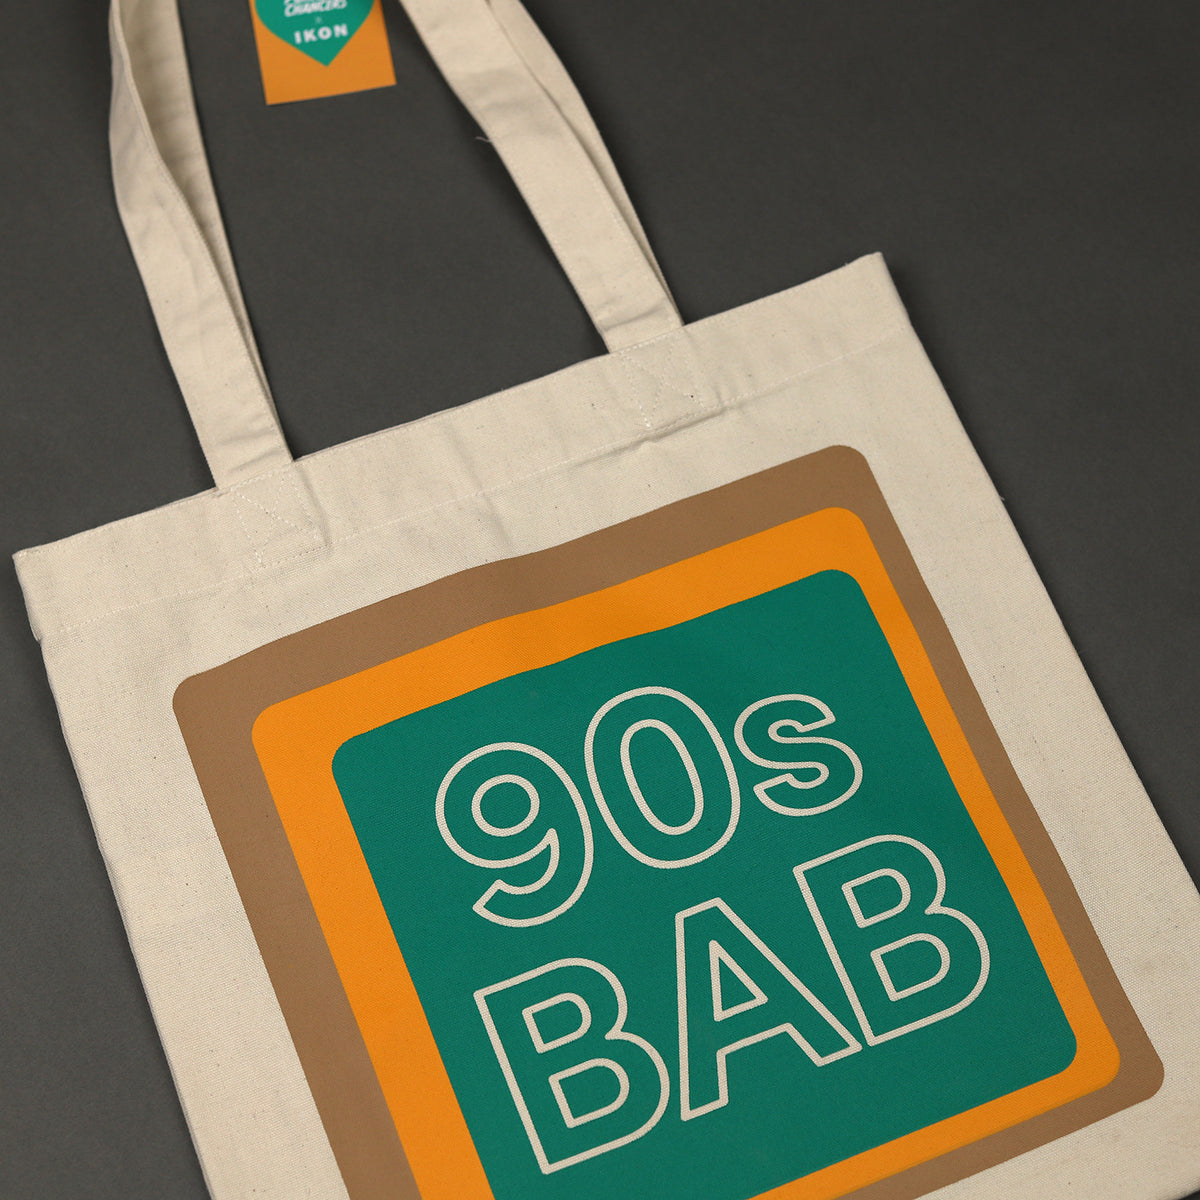 90s Bab Tote Bag